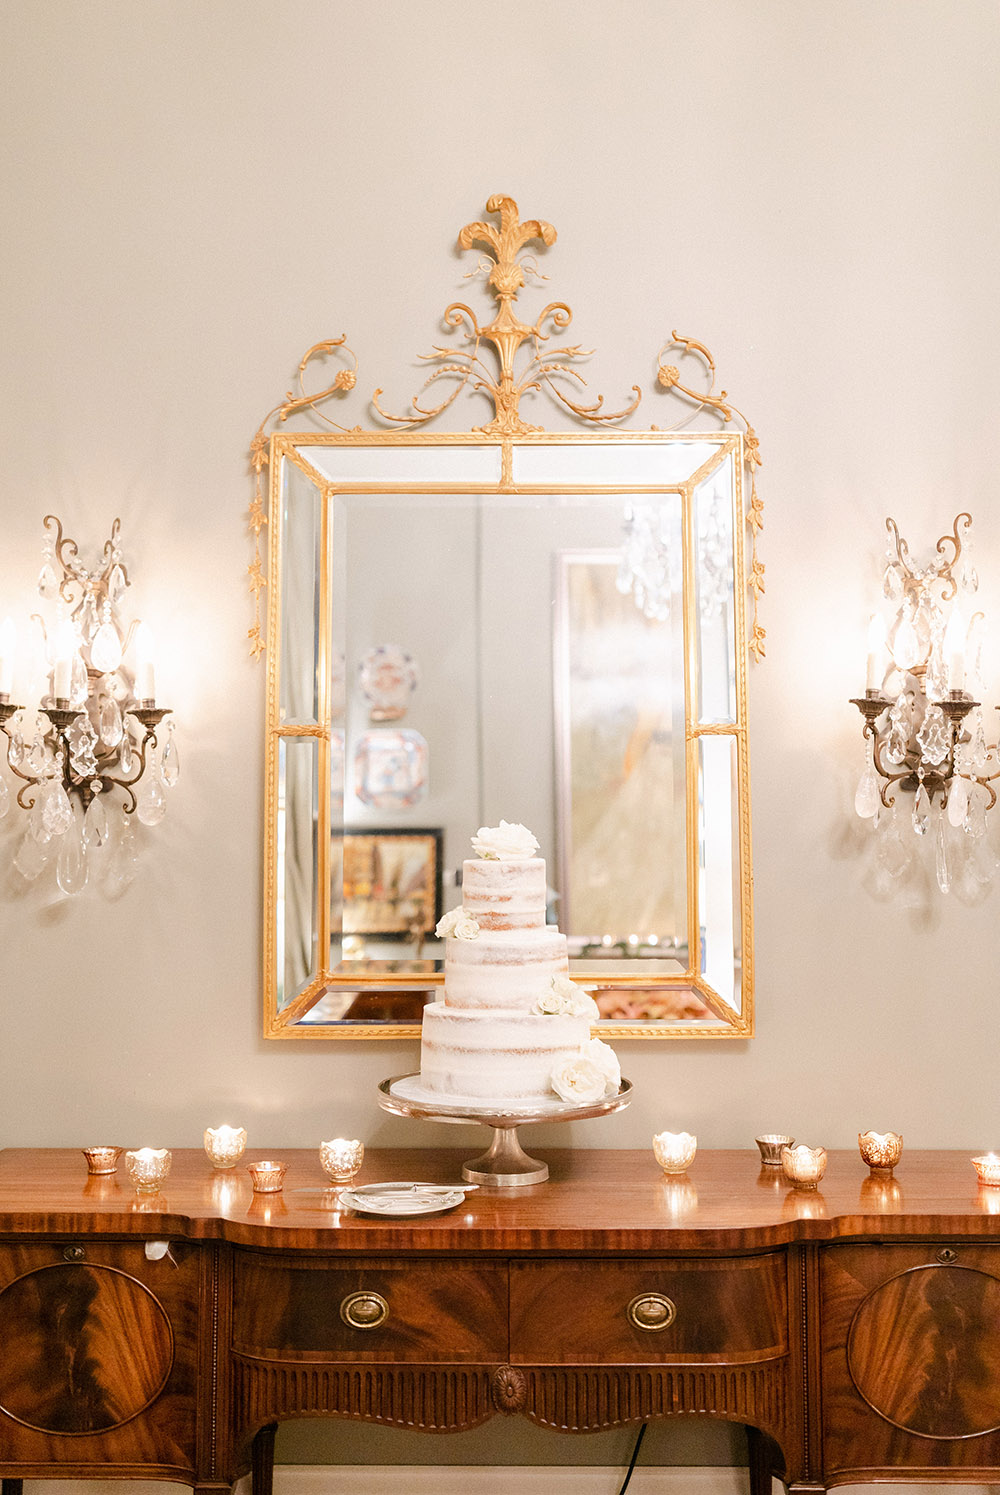 the wedding cake by Gambino's Bakery